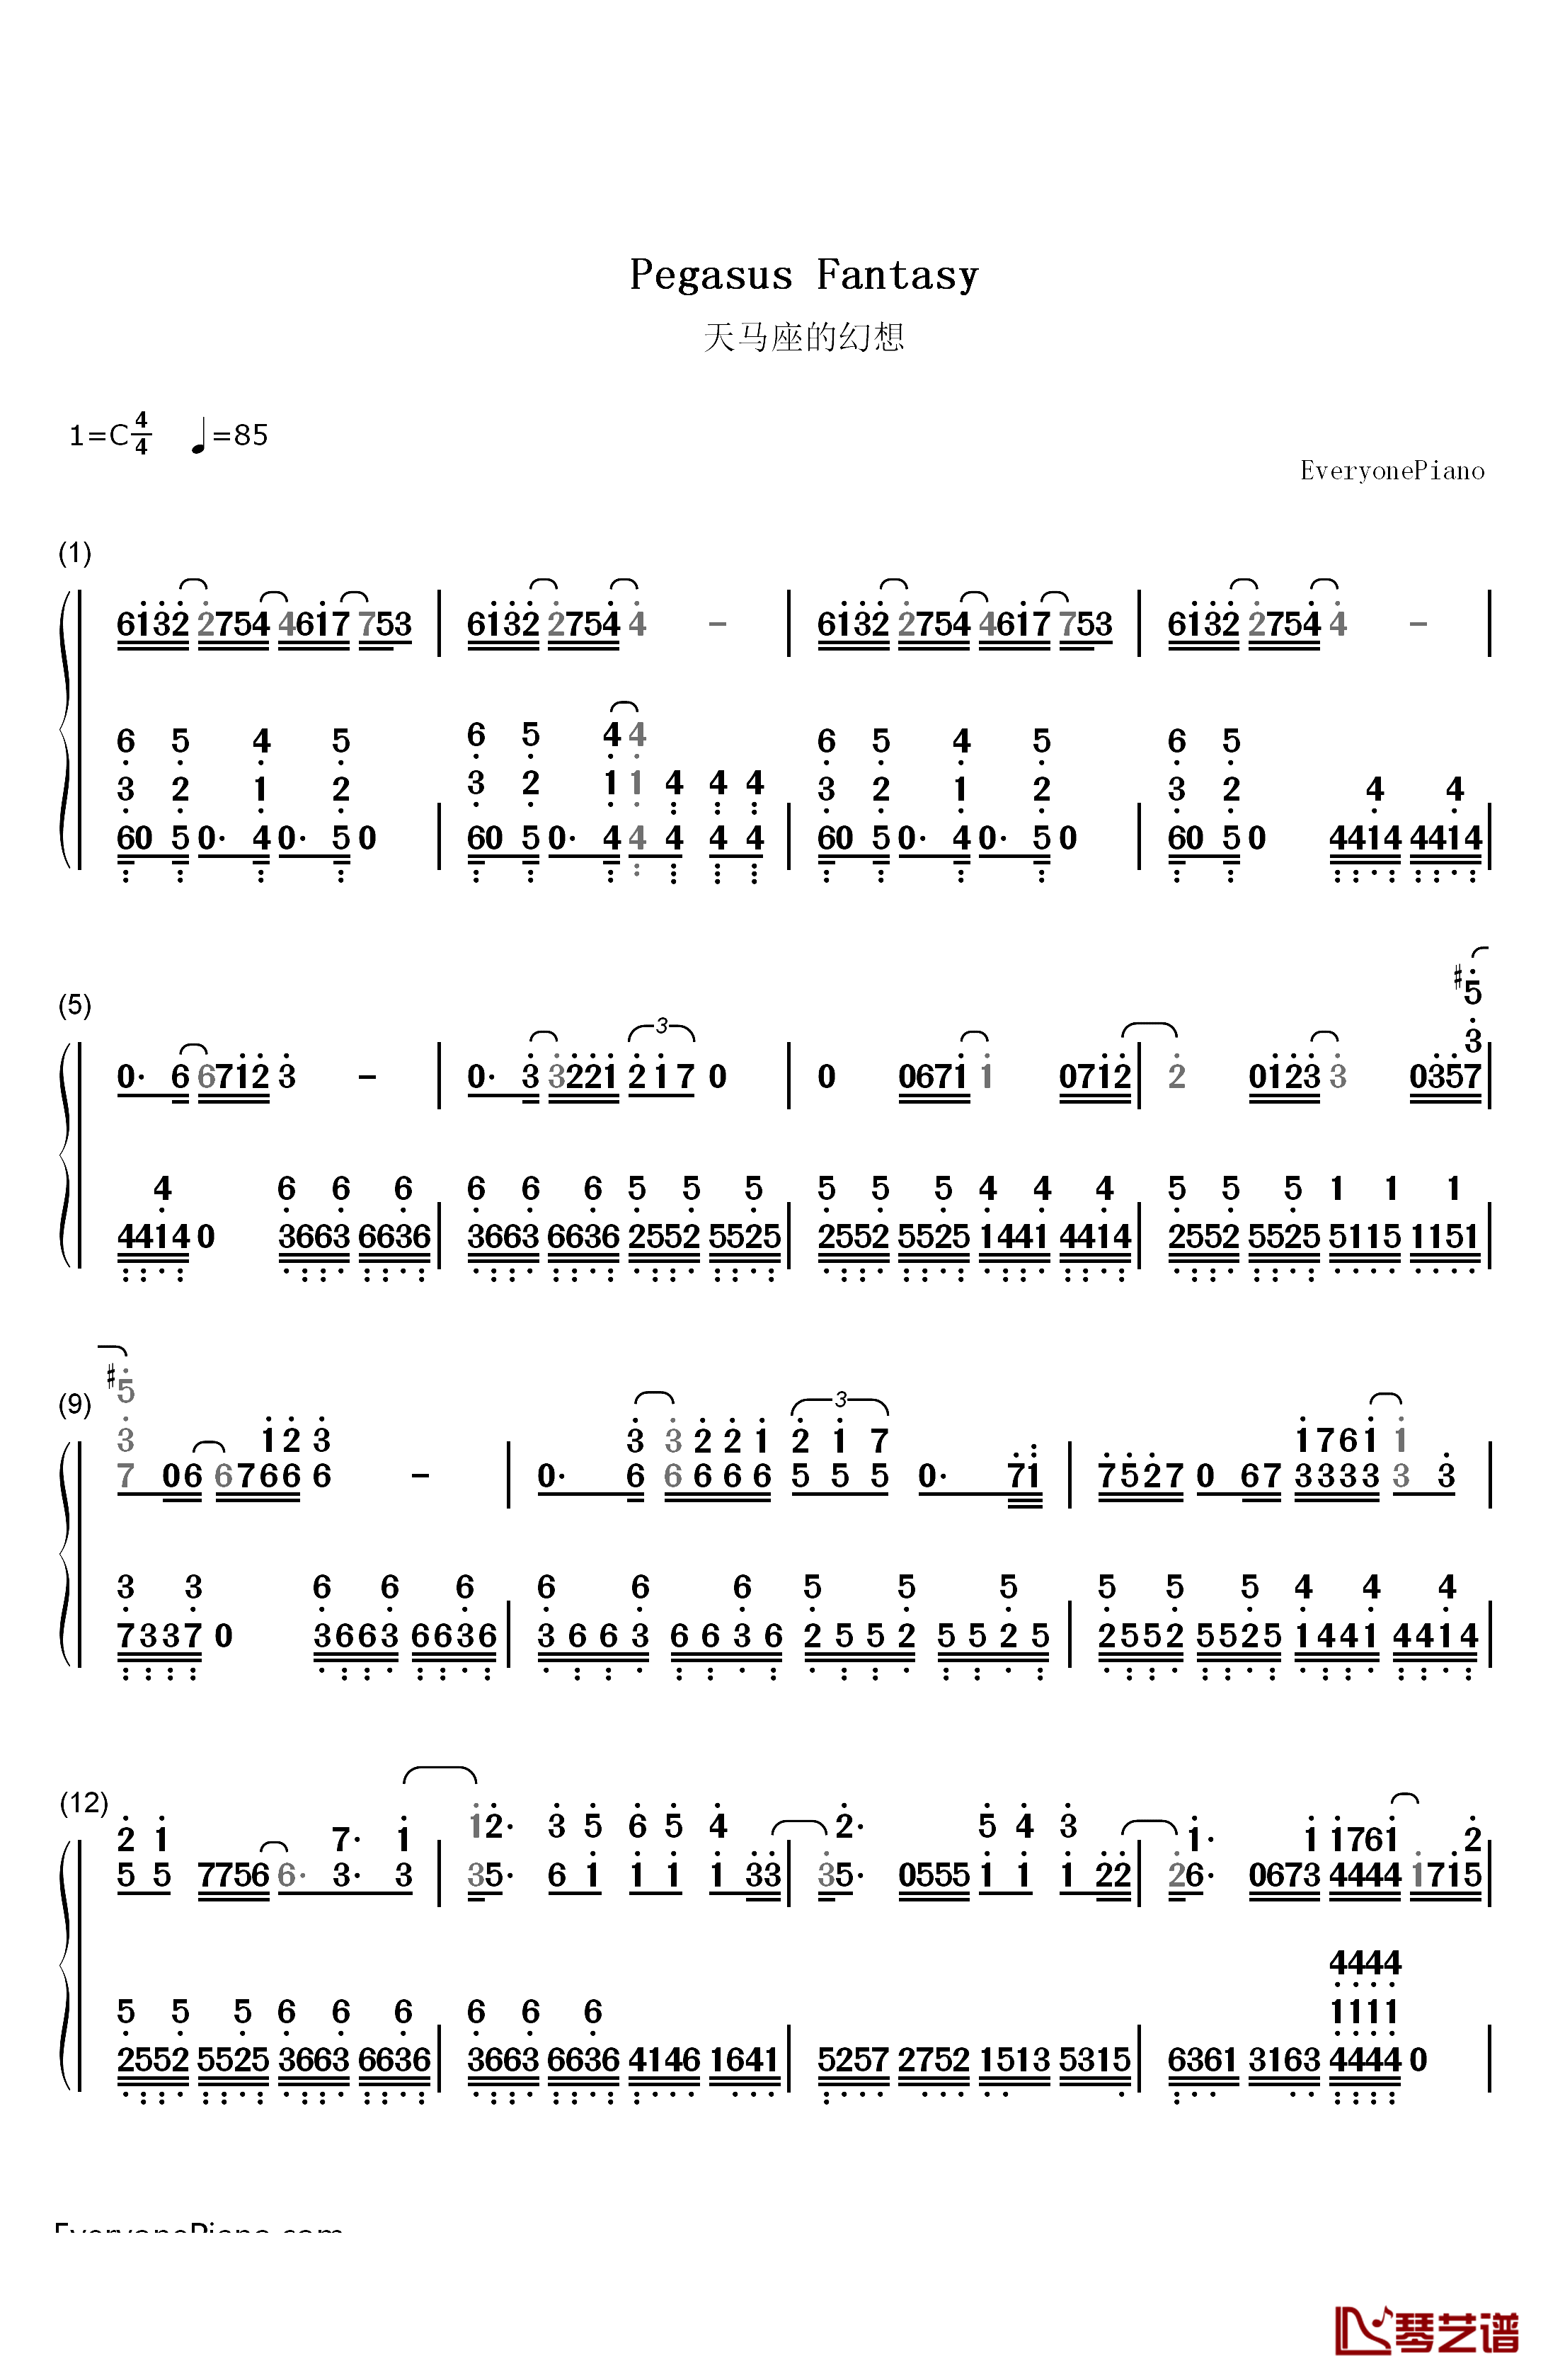 天马座的幻想钢琴简谱-数字双手-MAKE-UP1